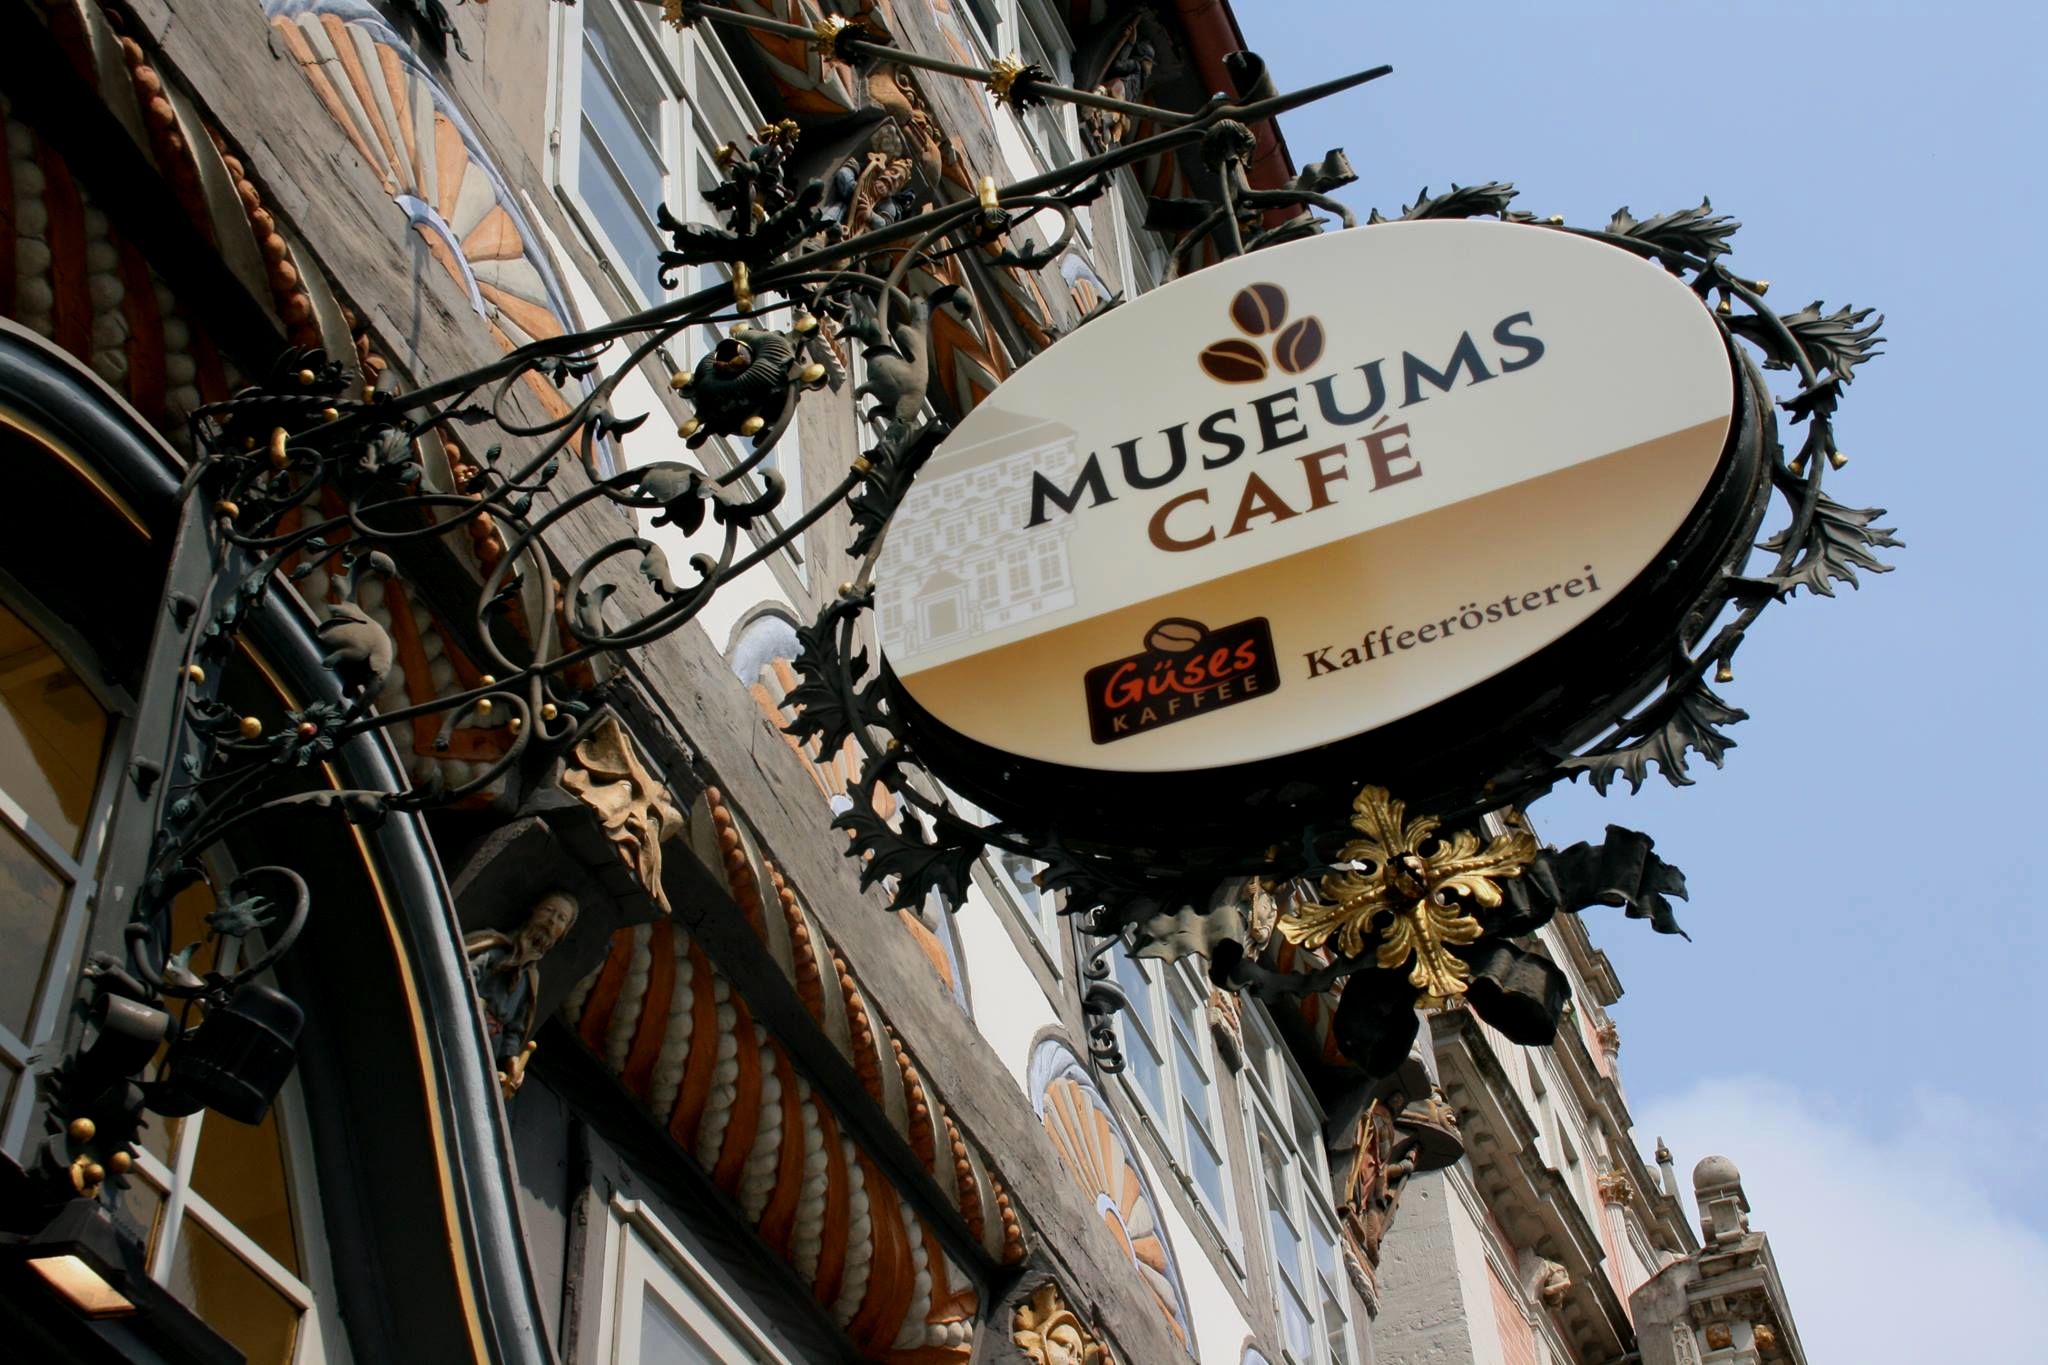 Museumscafé